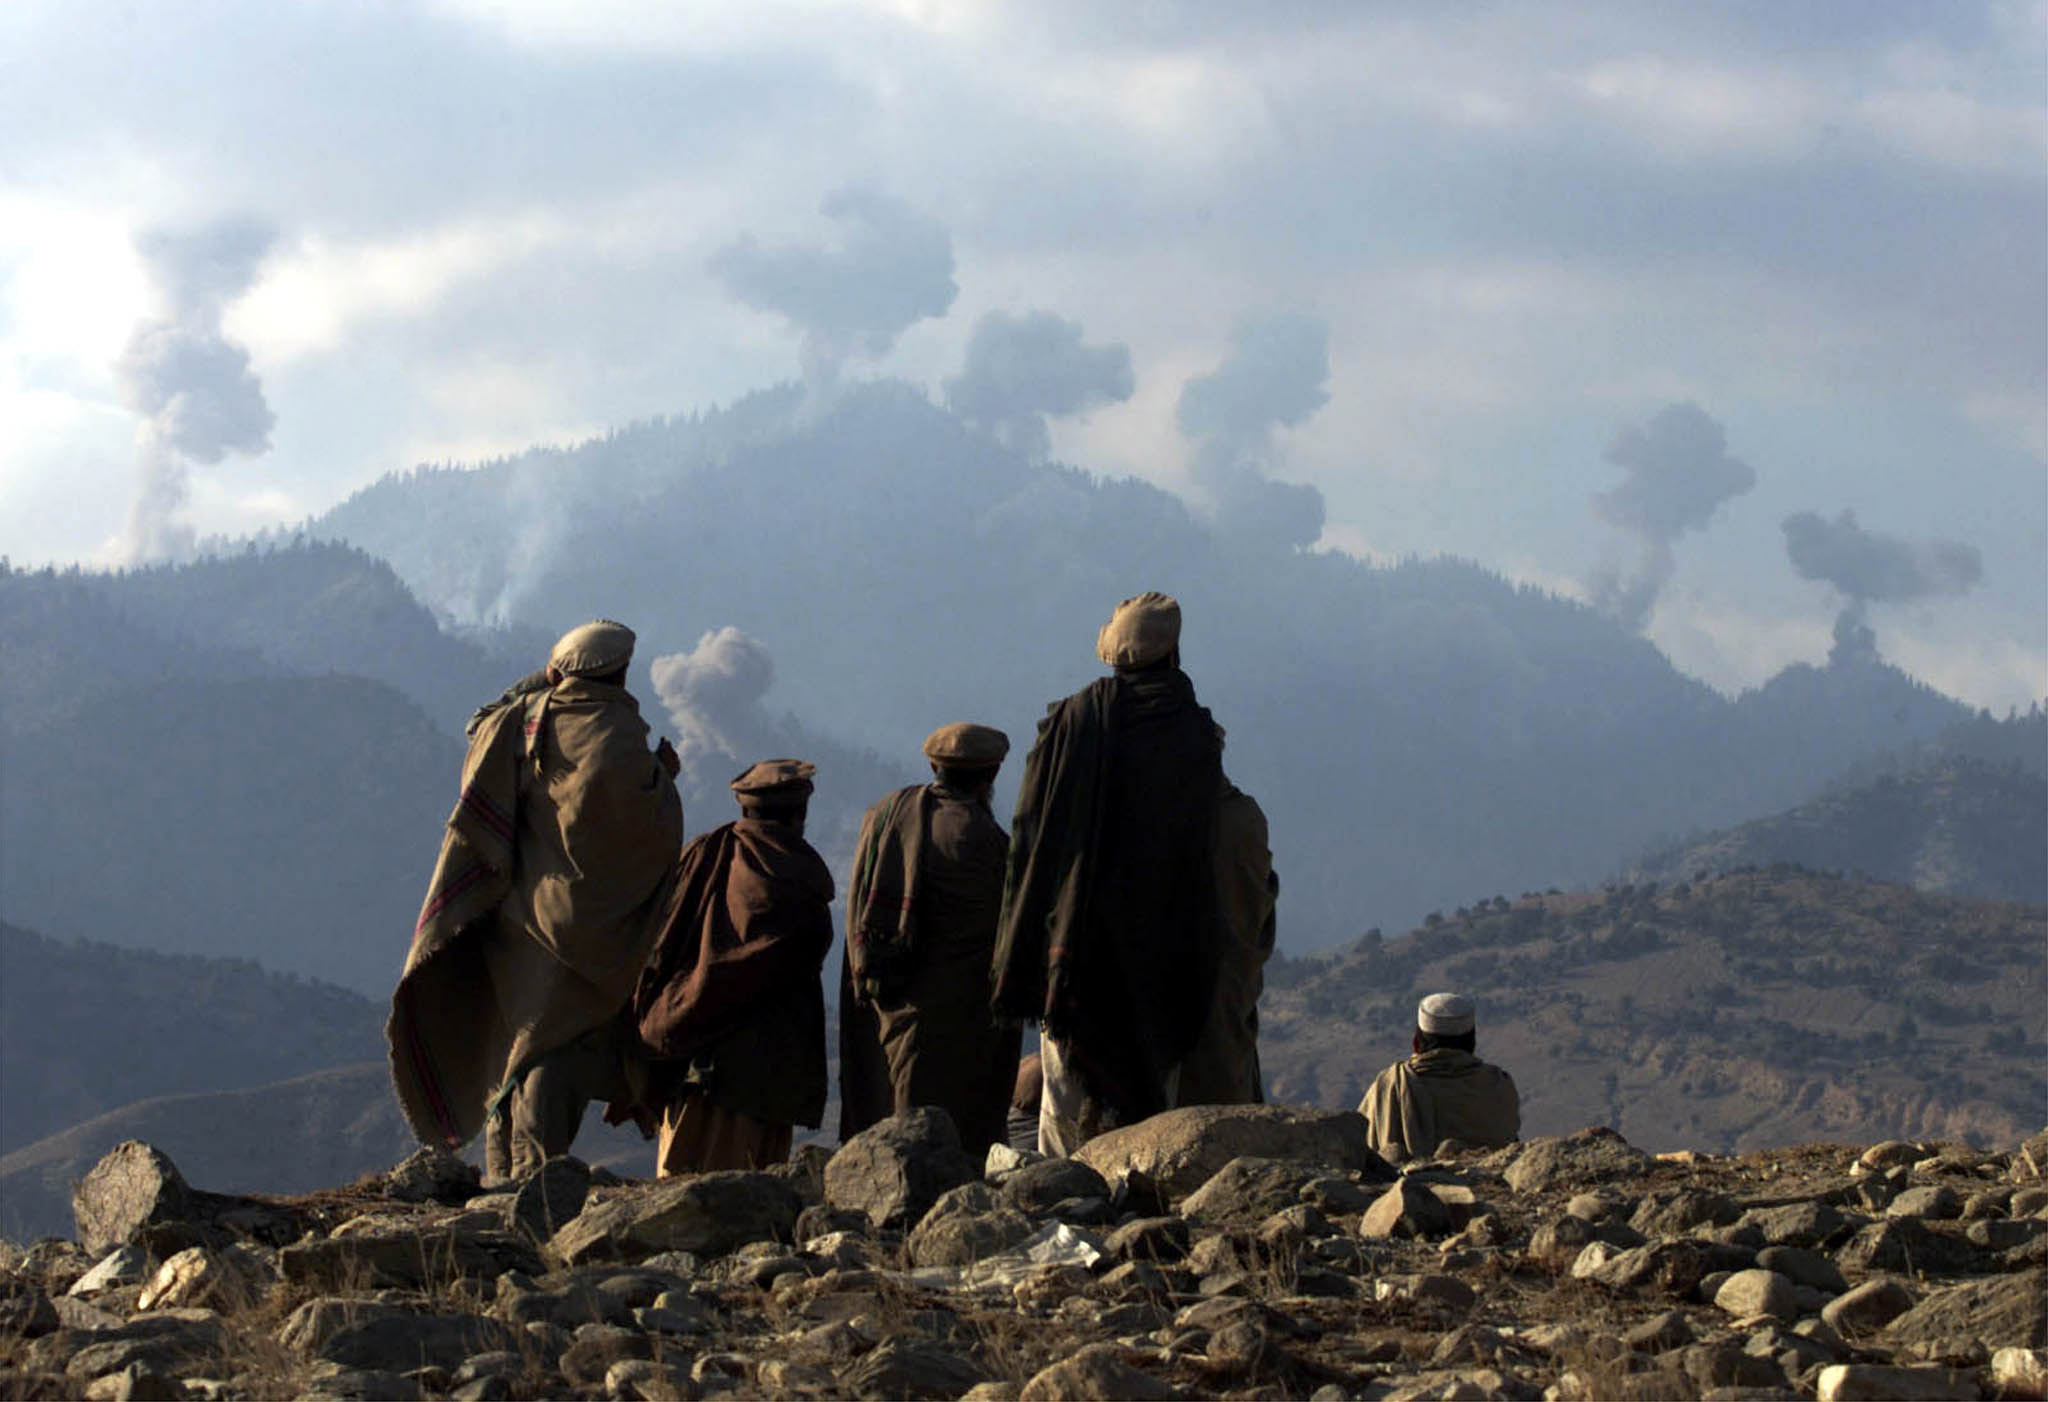   داعش انتزعت السيطرة على «تورا بورا» من طالبان الأفغانية